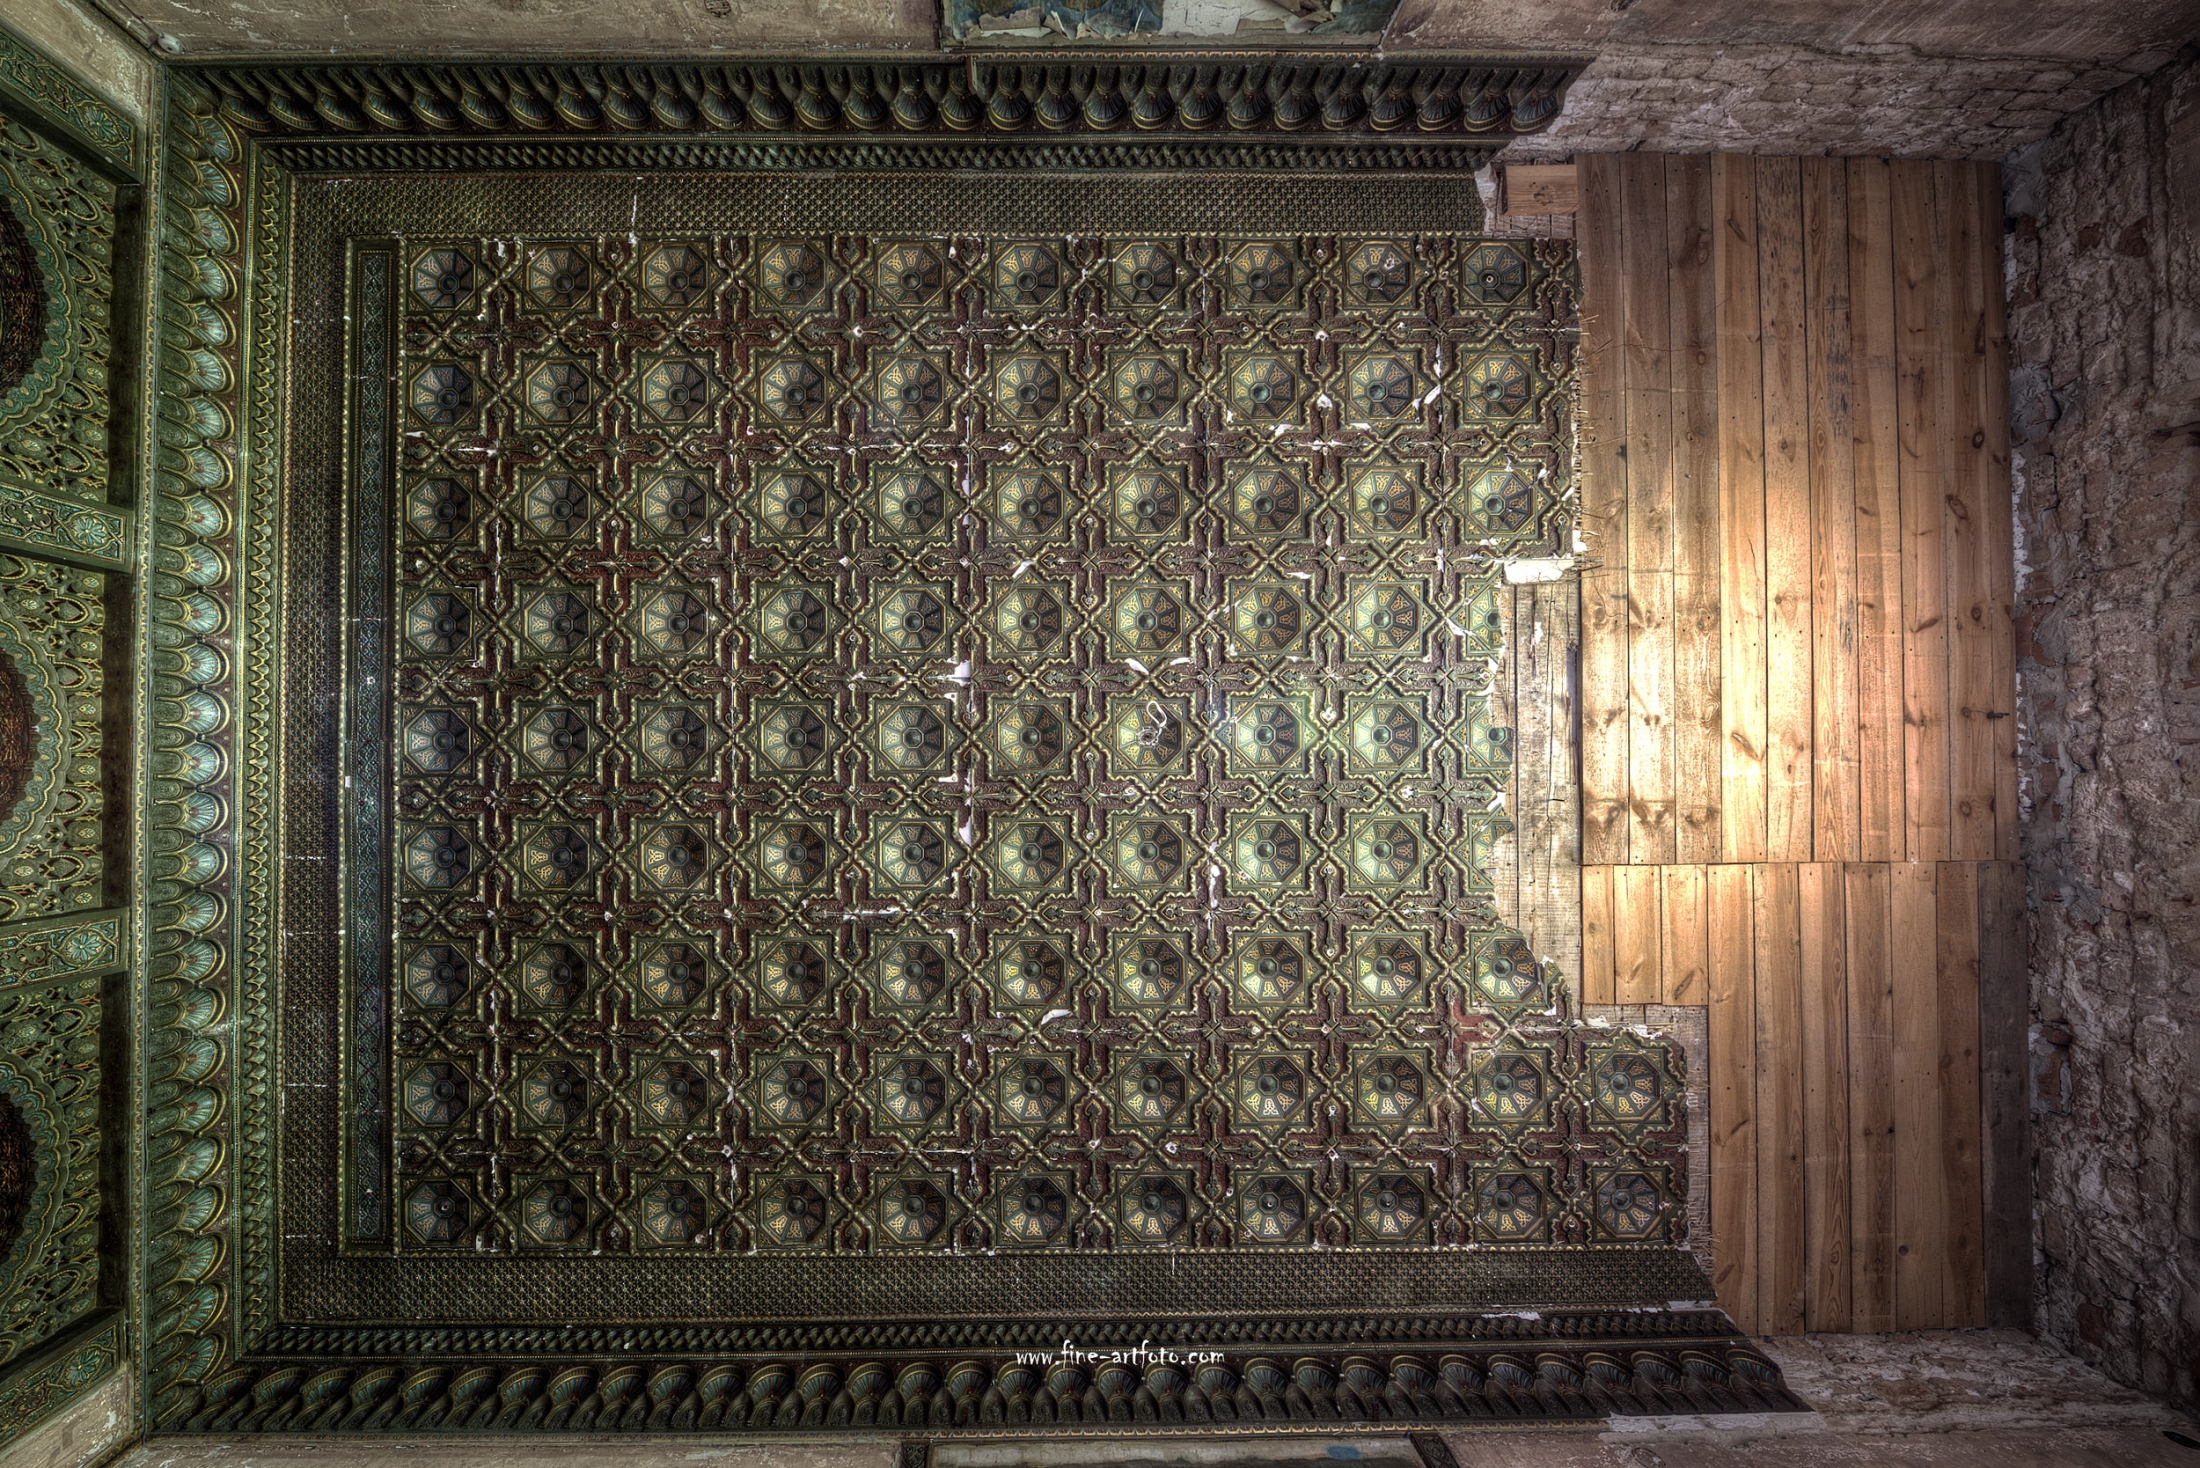 Tiled Ceiling